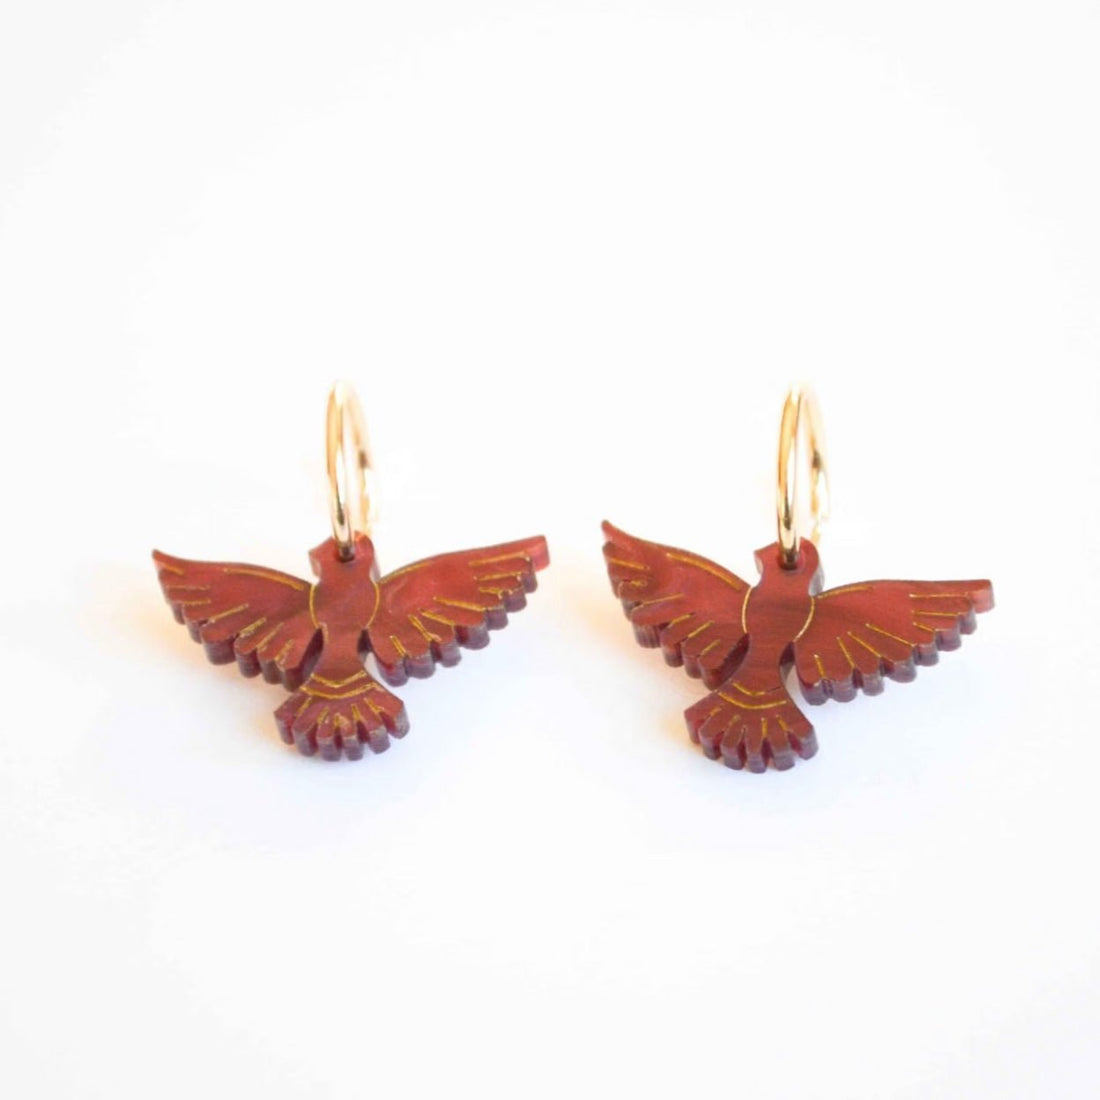 Hagen + Co - Lovebird Earrings, Plum - The Flower Crate